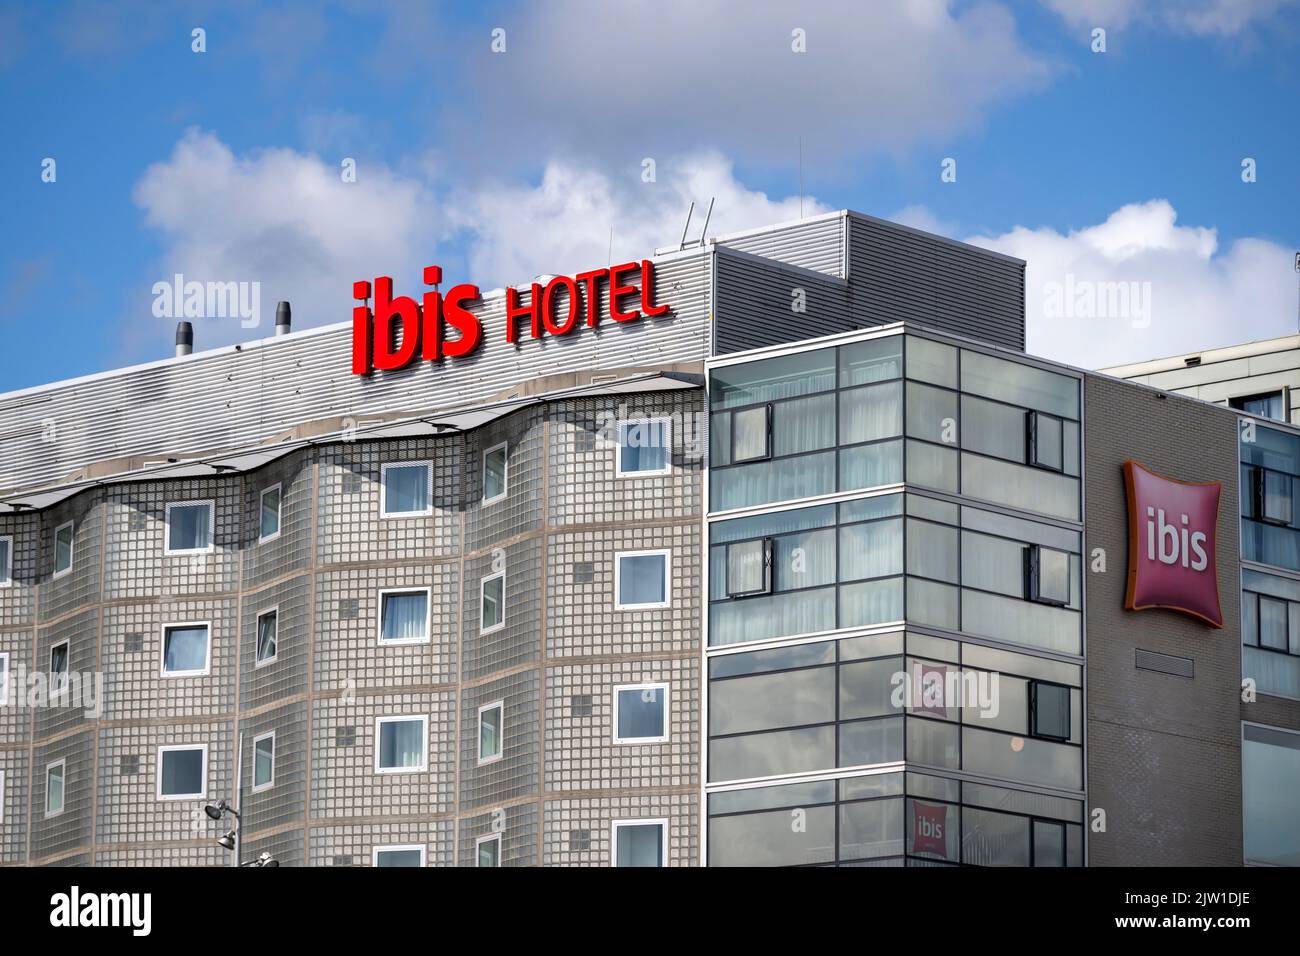 Vista general de un hotel Ibis en Amsterdam, Holanda. Foto de stock